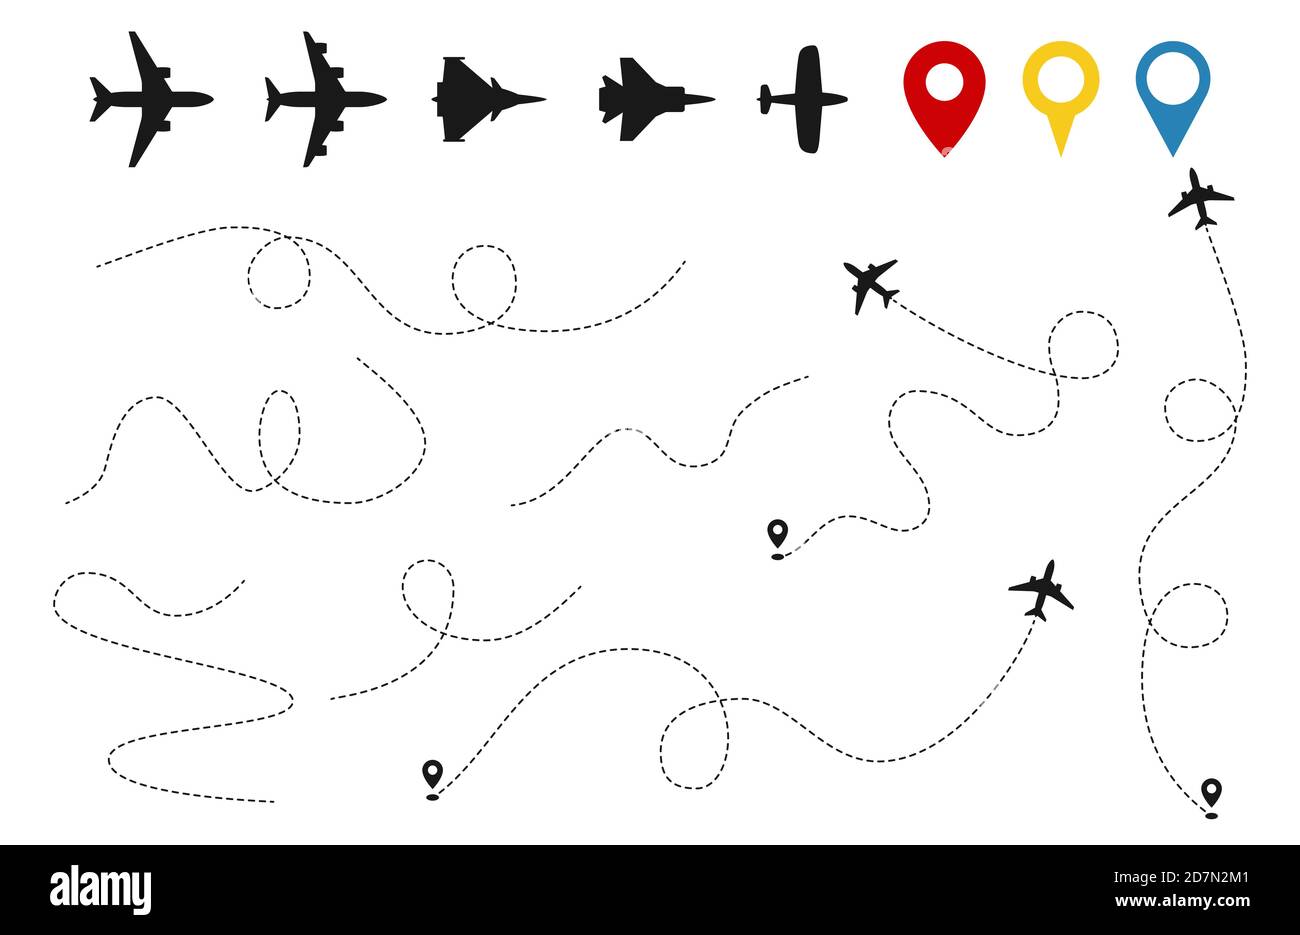 Vektor für Ebenenpfade. Flugzeugverfolgung, Flugzeuge Silhouetten, Position Pins isoliert auf weißem Hintergrund. Darstellung der Fluglinie, Flugreisen mit dem Flugzeug Stock Vektor